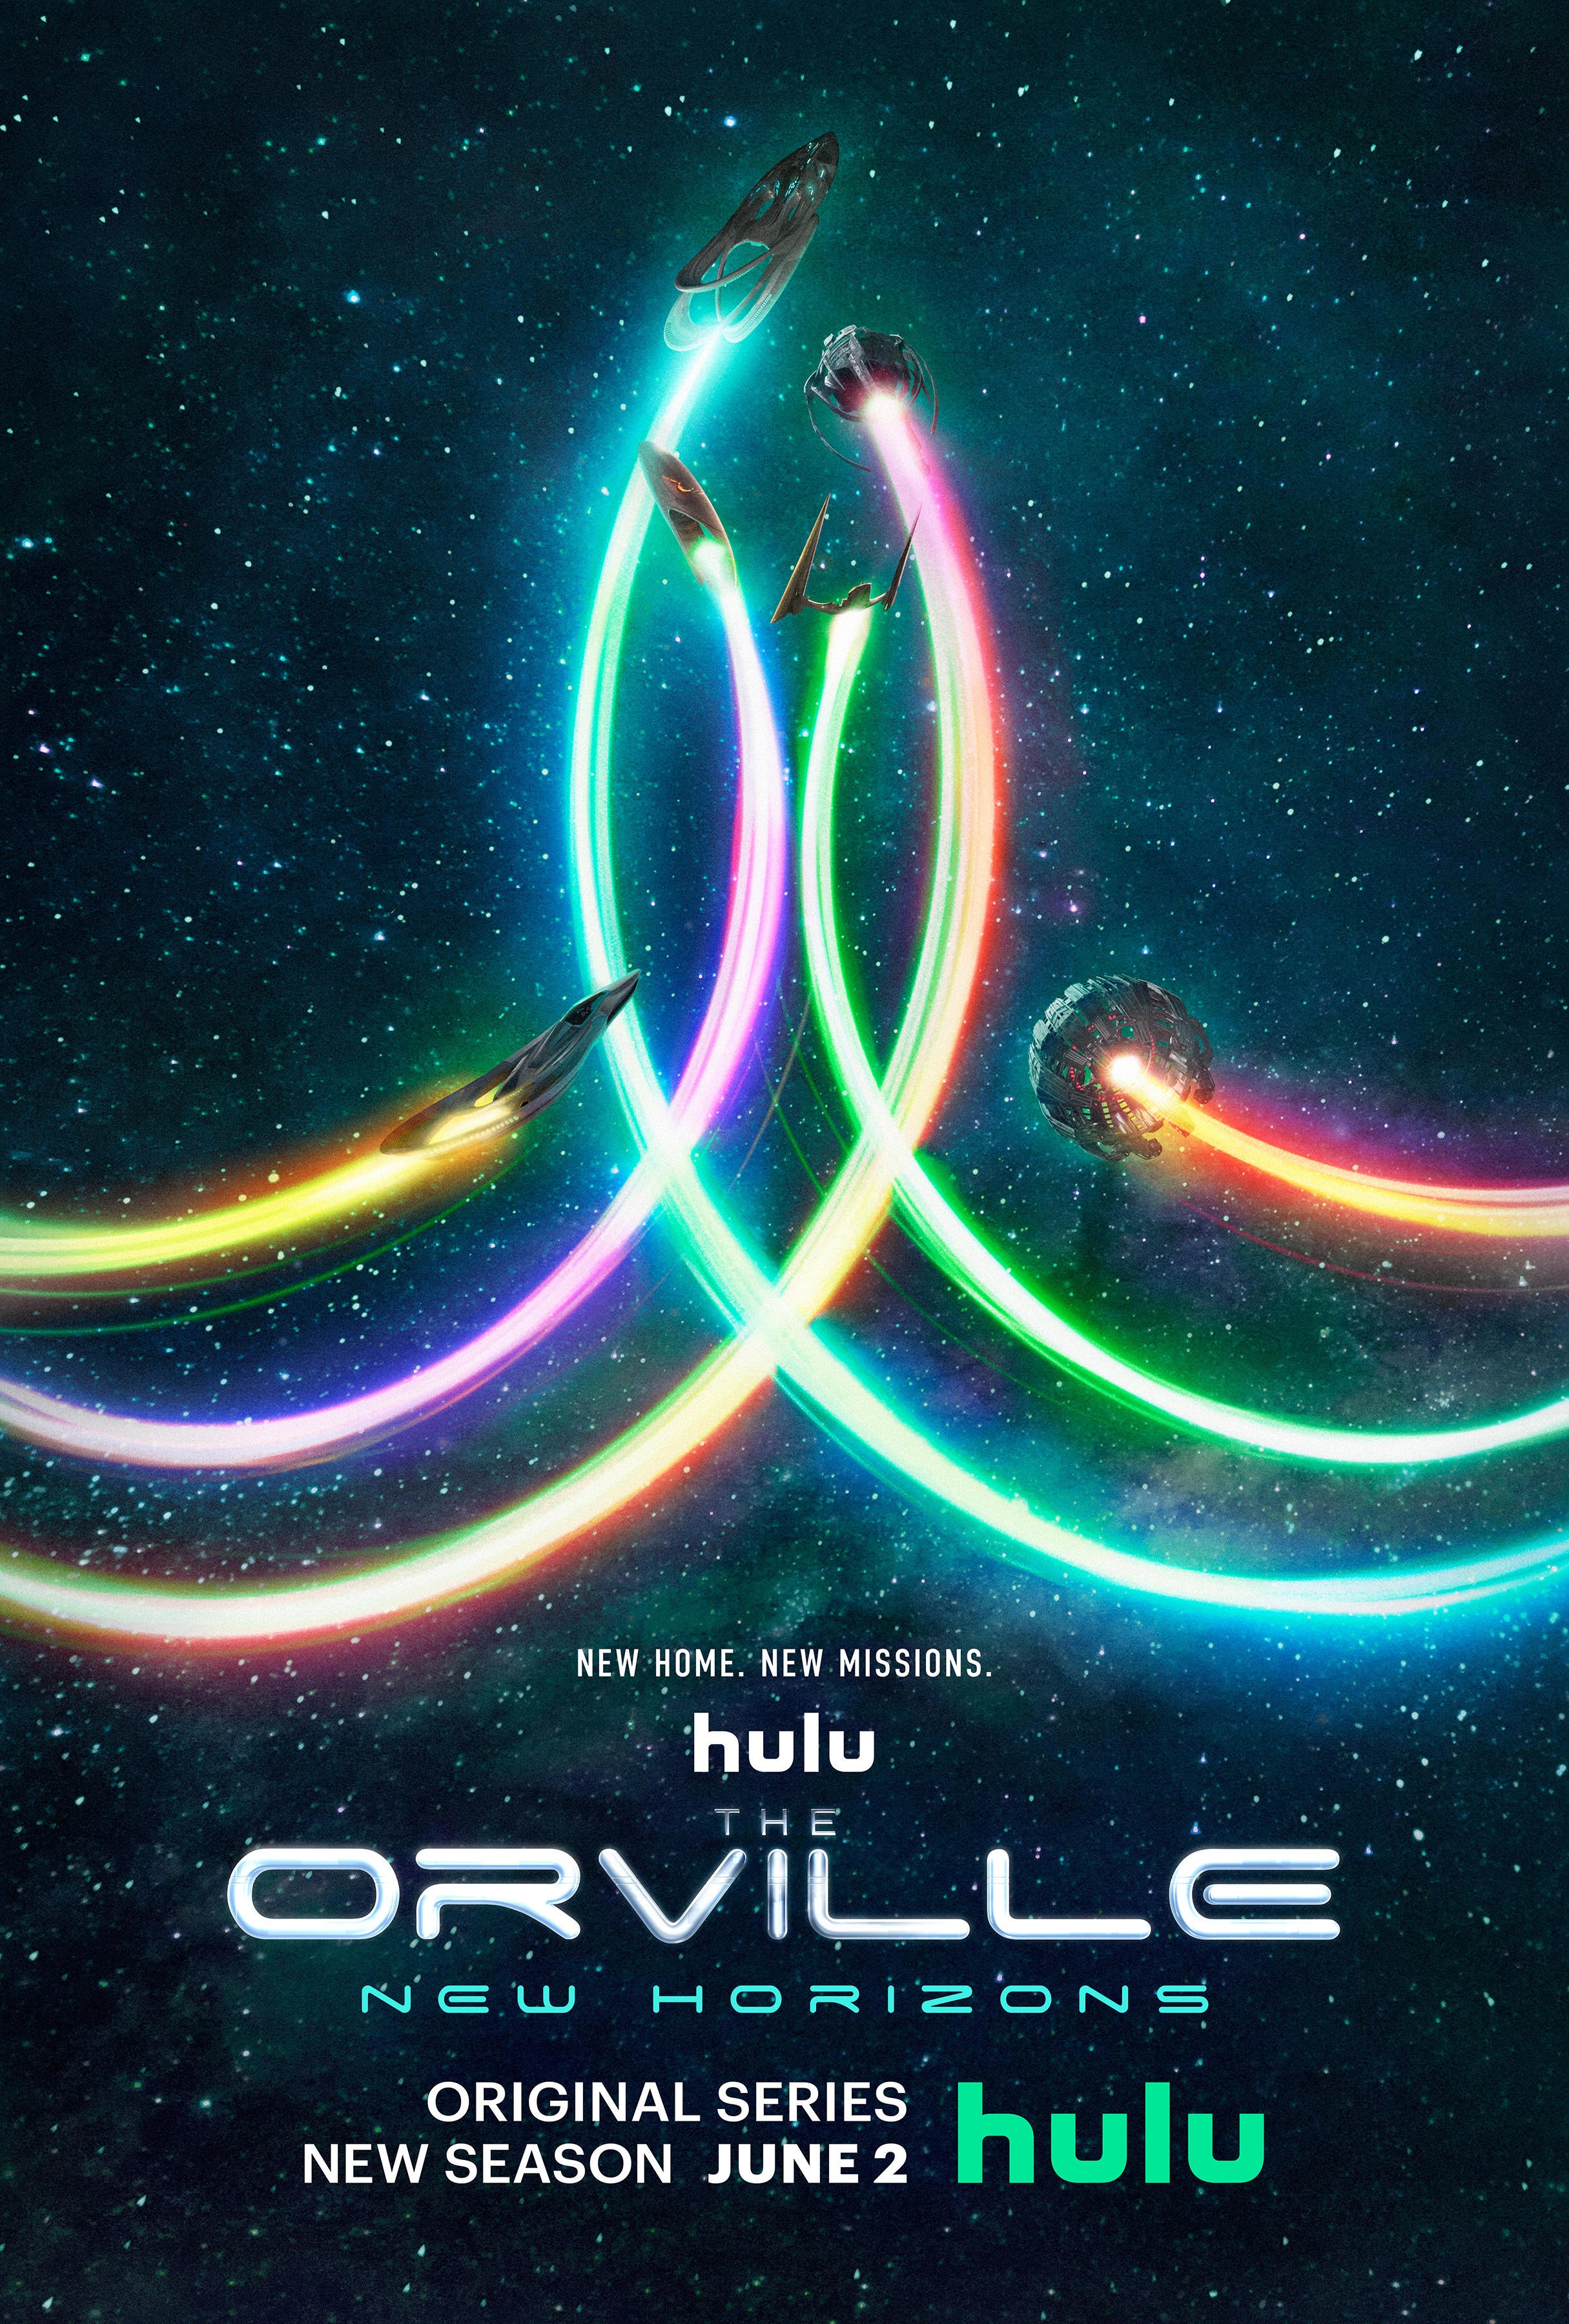 The Orville Season 3 Reveals New Teaser Poster